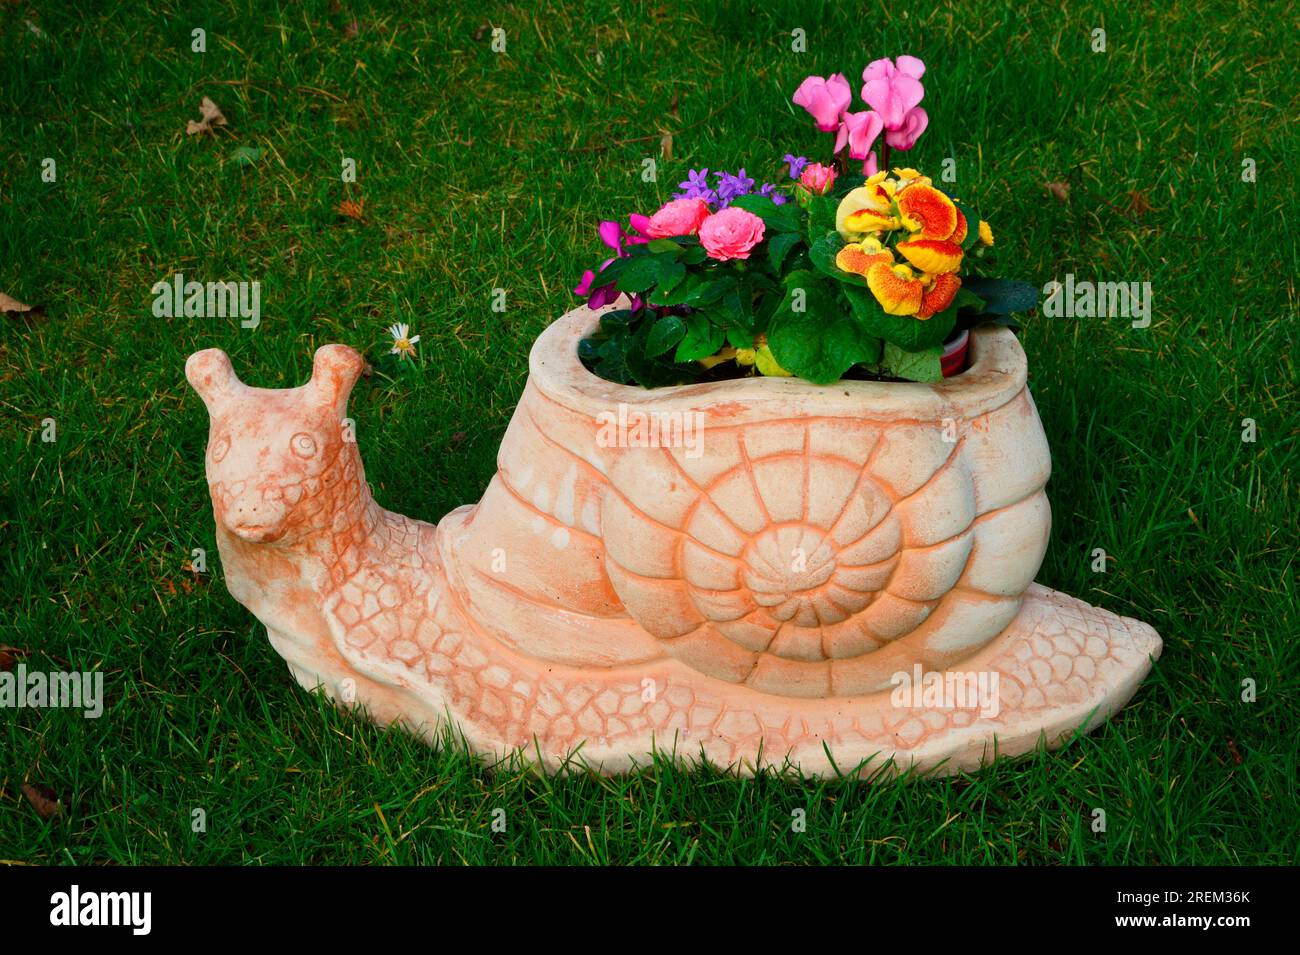 Schneckenform Blumentopf Stockfoto